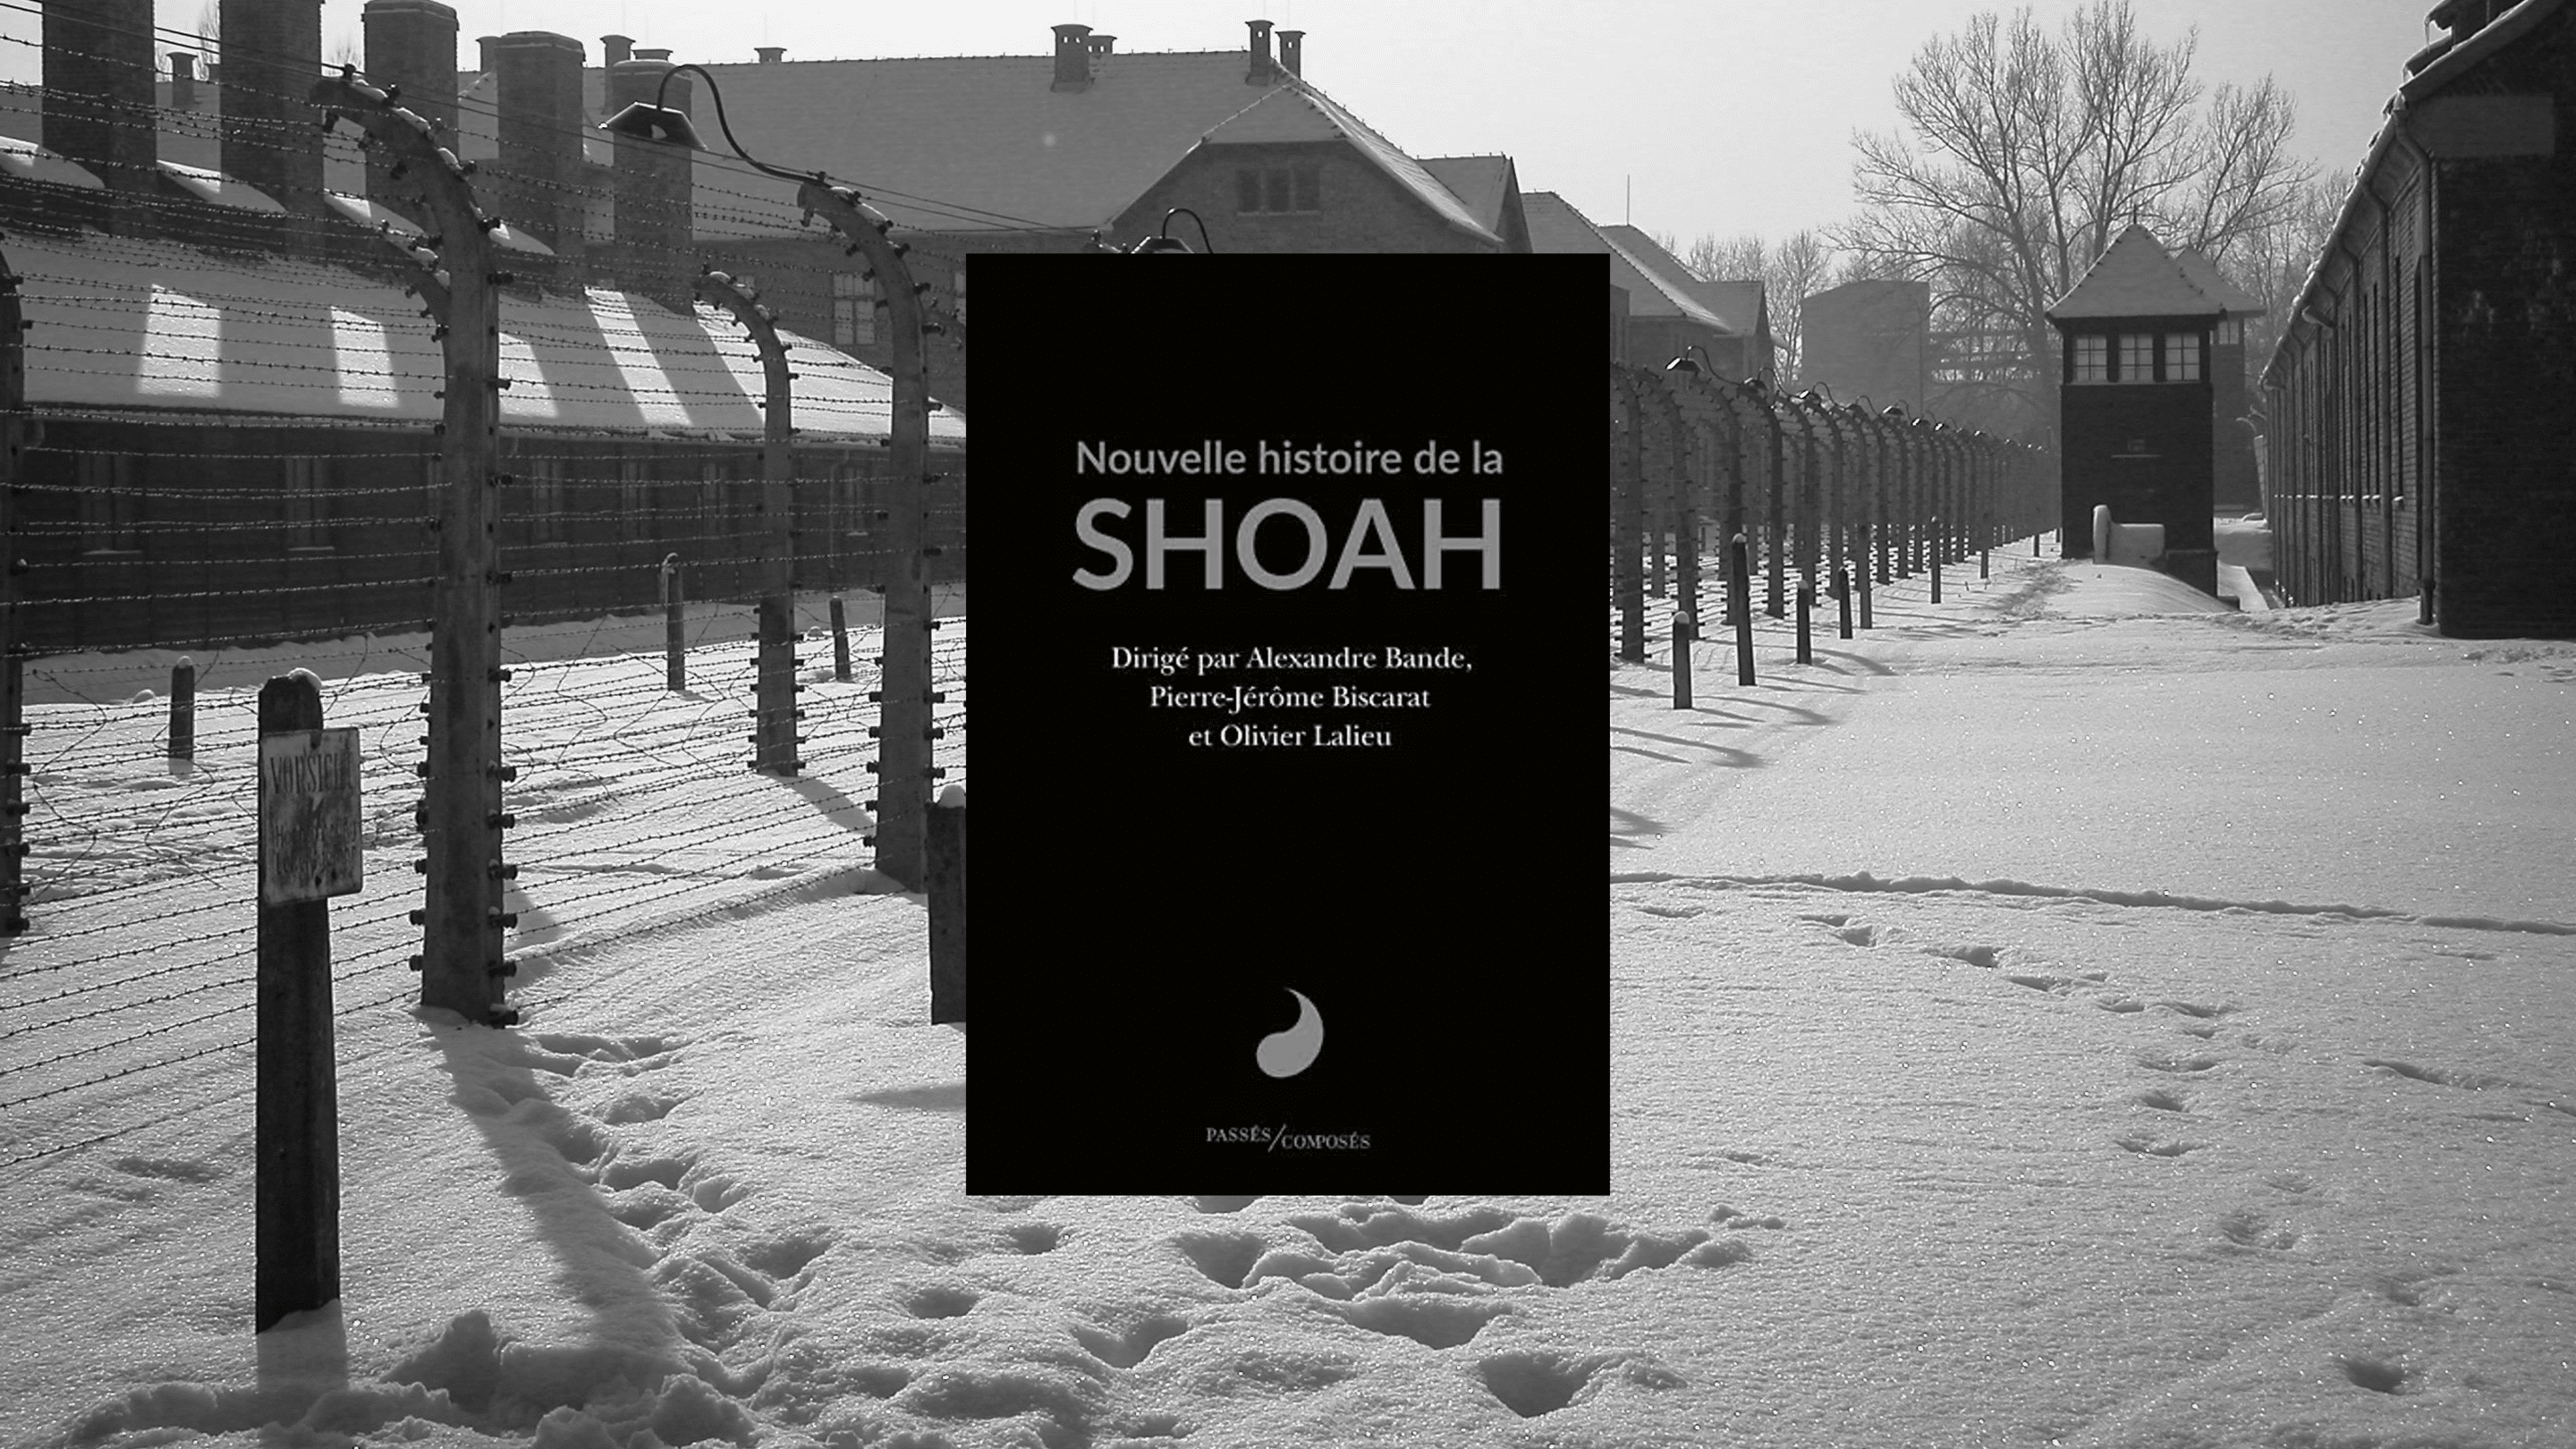 Livre - Nouvelle histoire de la Shoah. Crédit photo : Unsplash